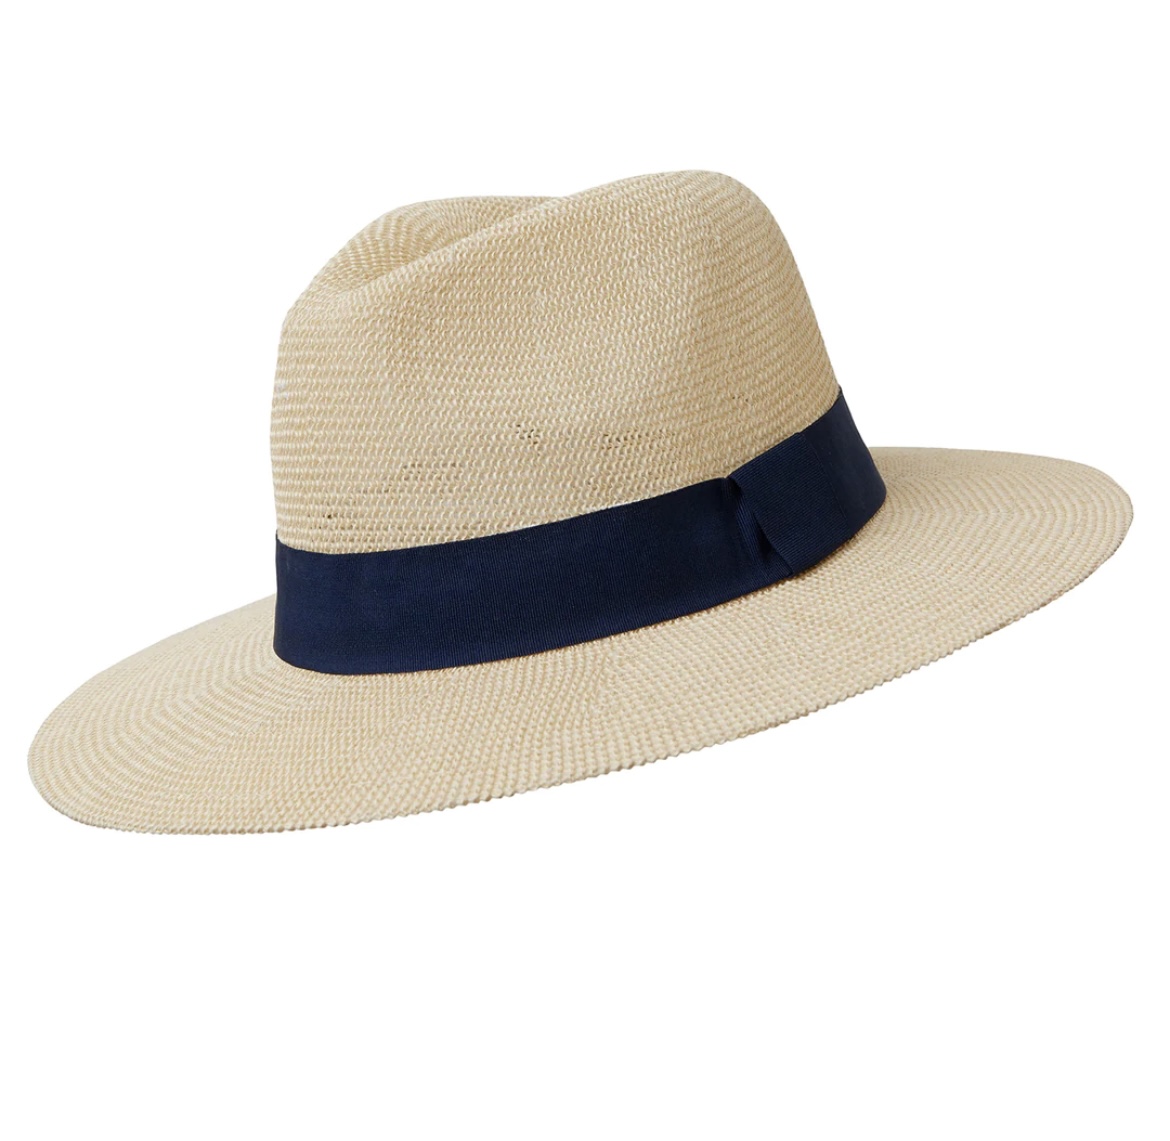 Somerville Panama Sun Hat - Navy